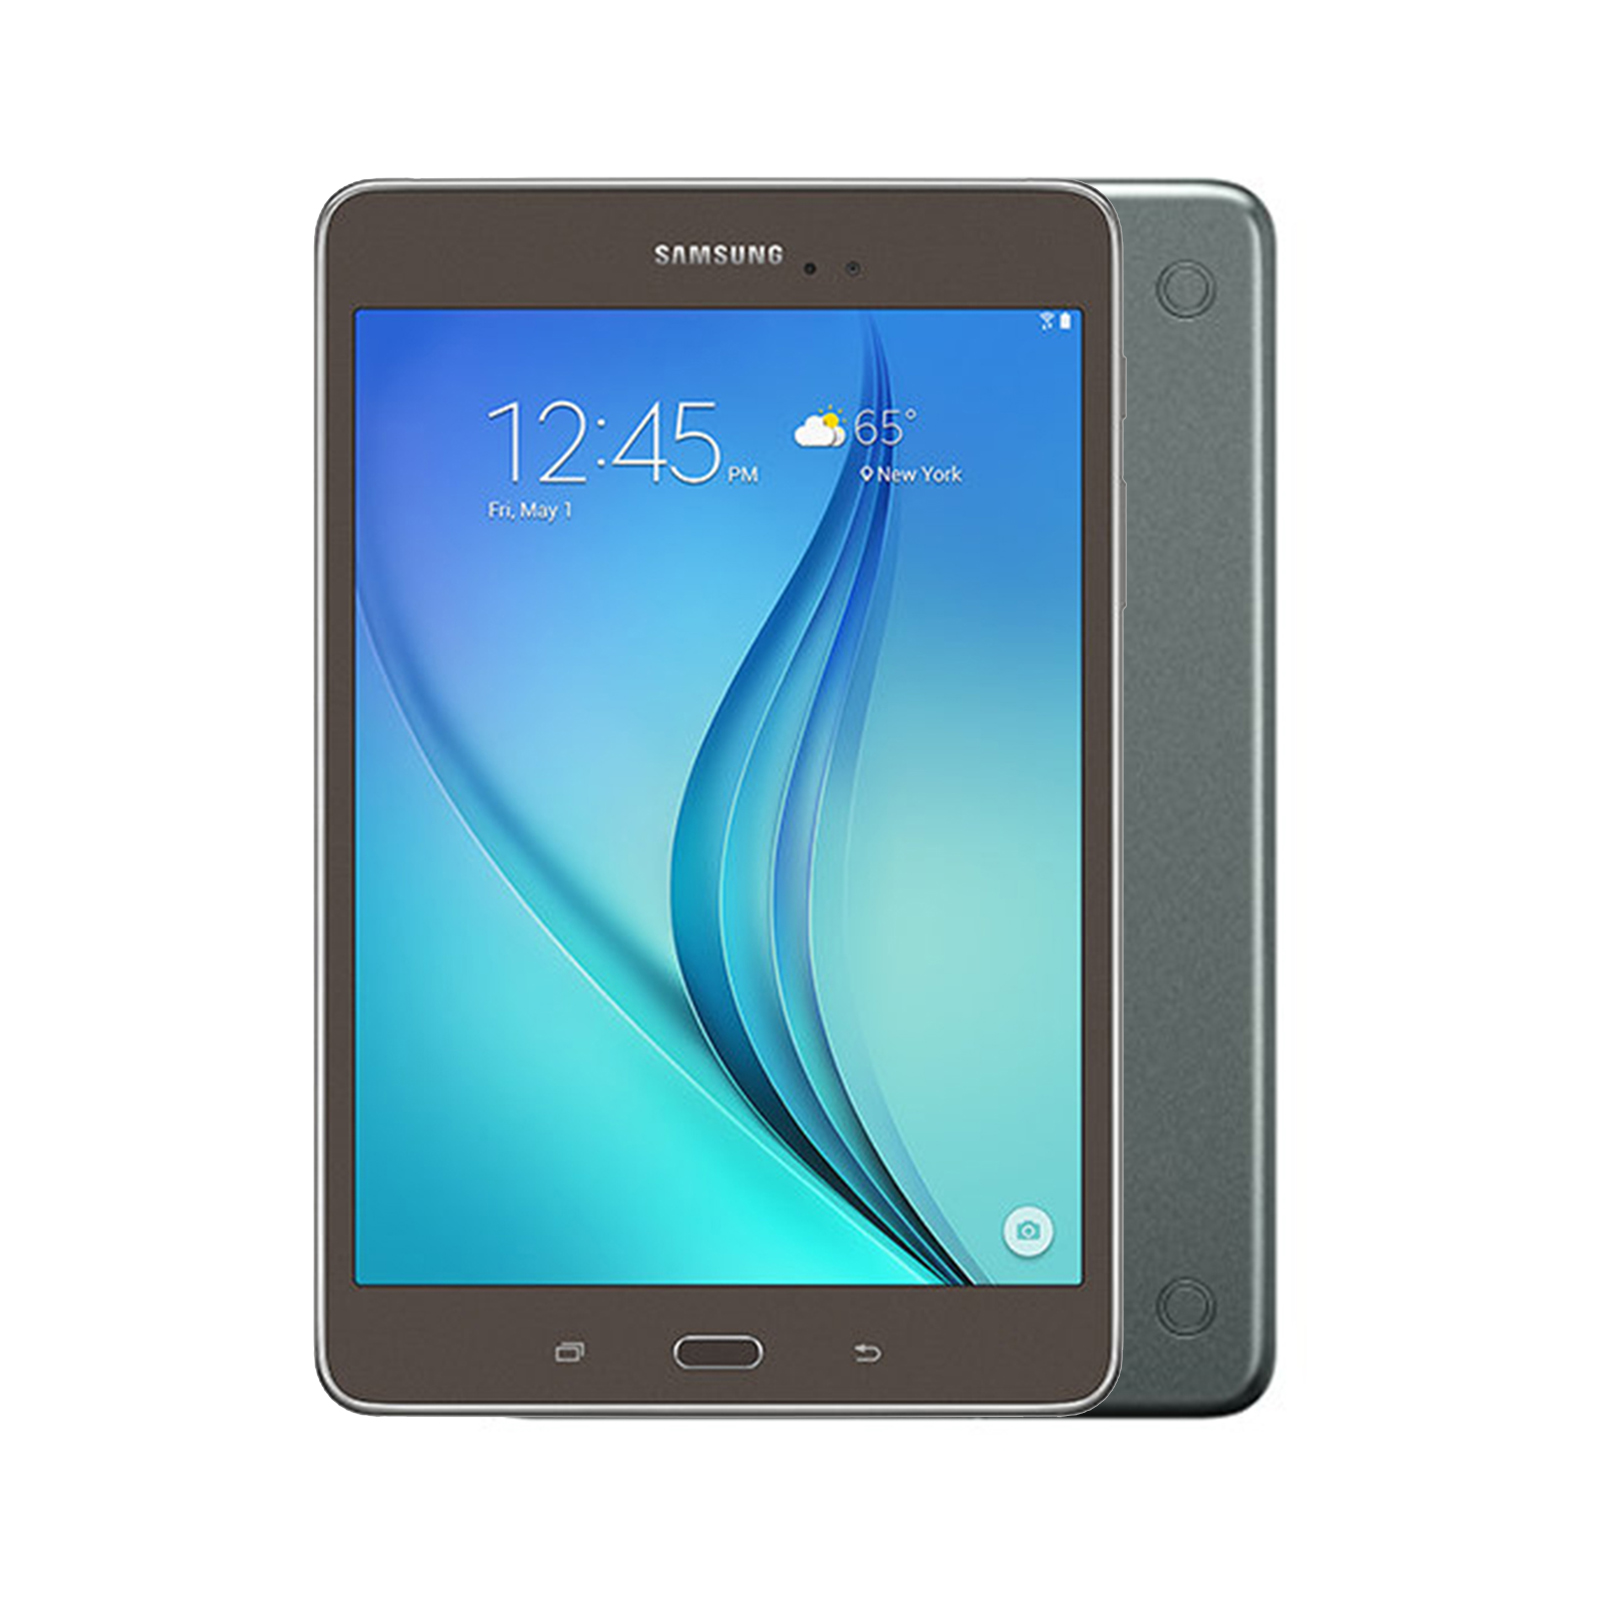 Samsung Galaxy Tab A 8.0 [ Wi-Fi + Cellular] [16GB] [Grey] [Brand New] [24M]